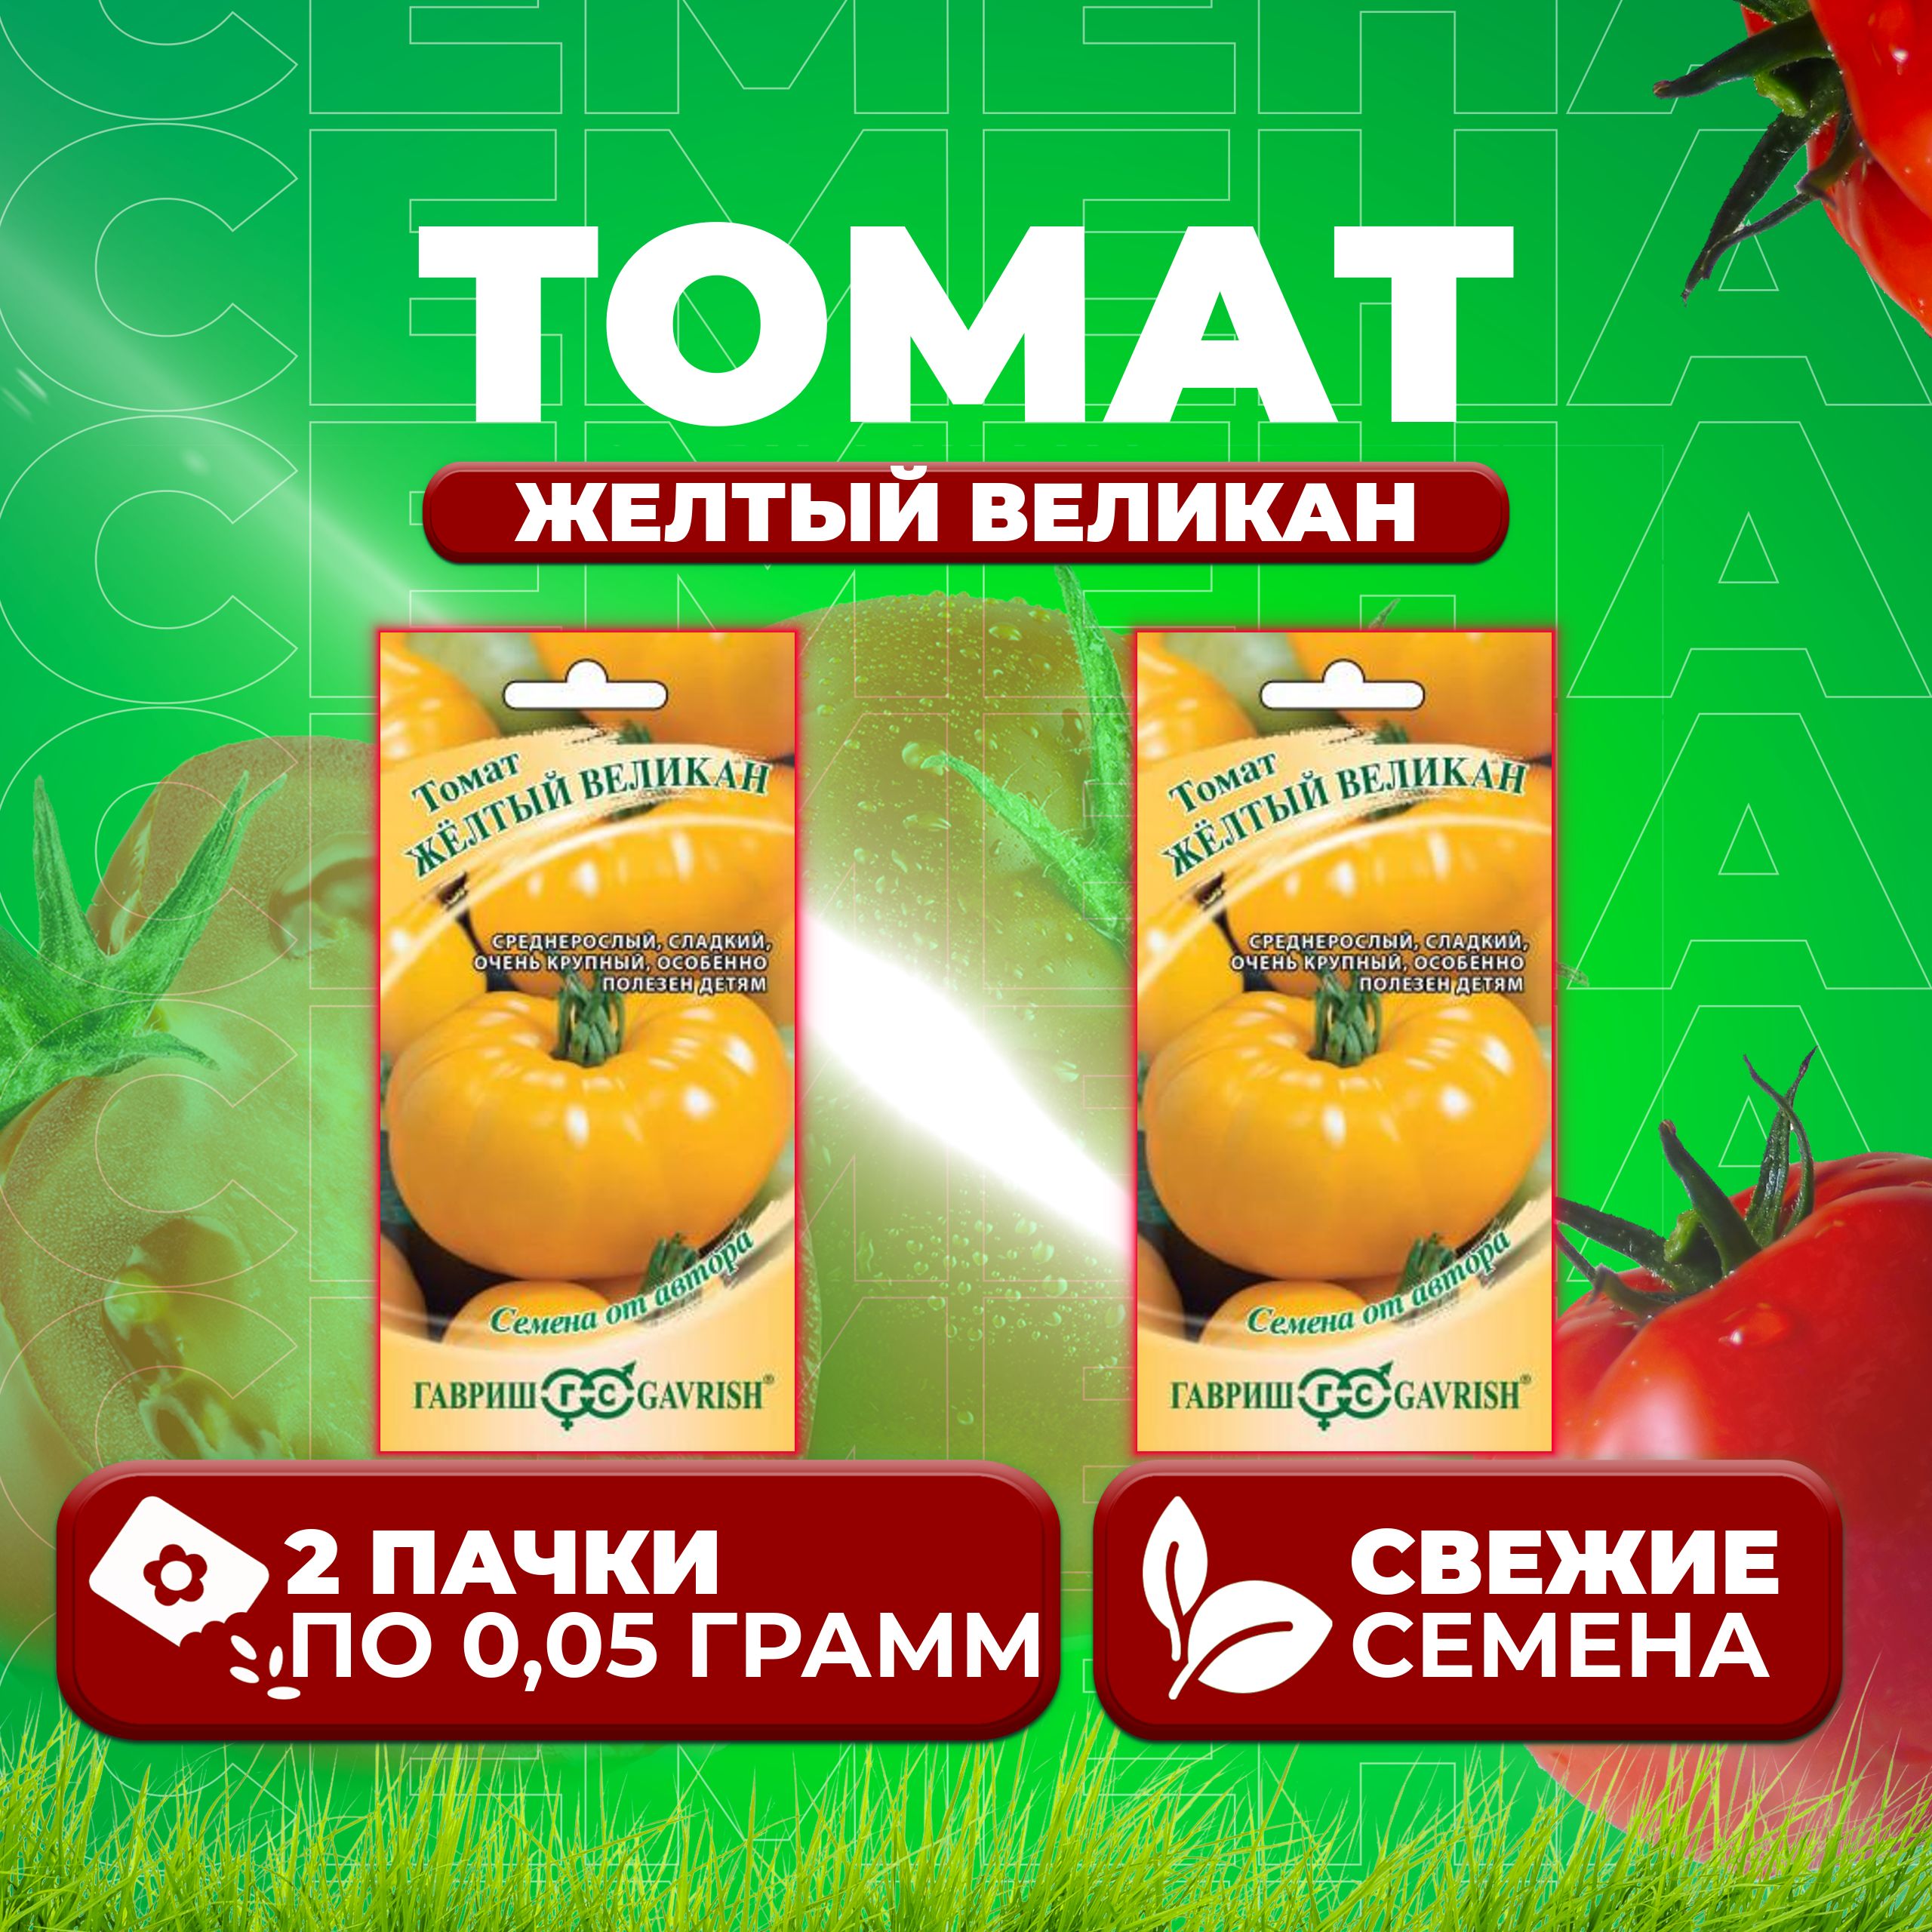 Семена томат Желтый великан Гавриш 1071856993-2 2 уп.